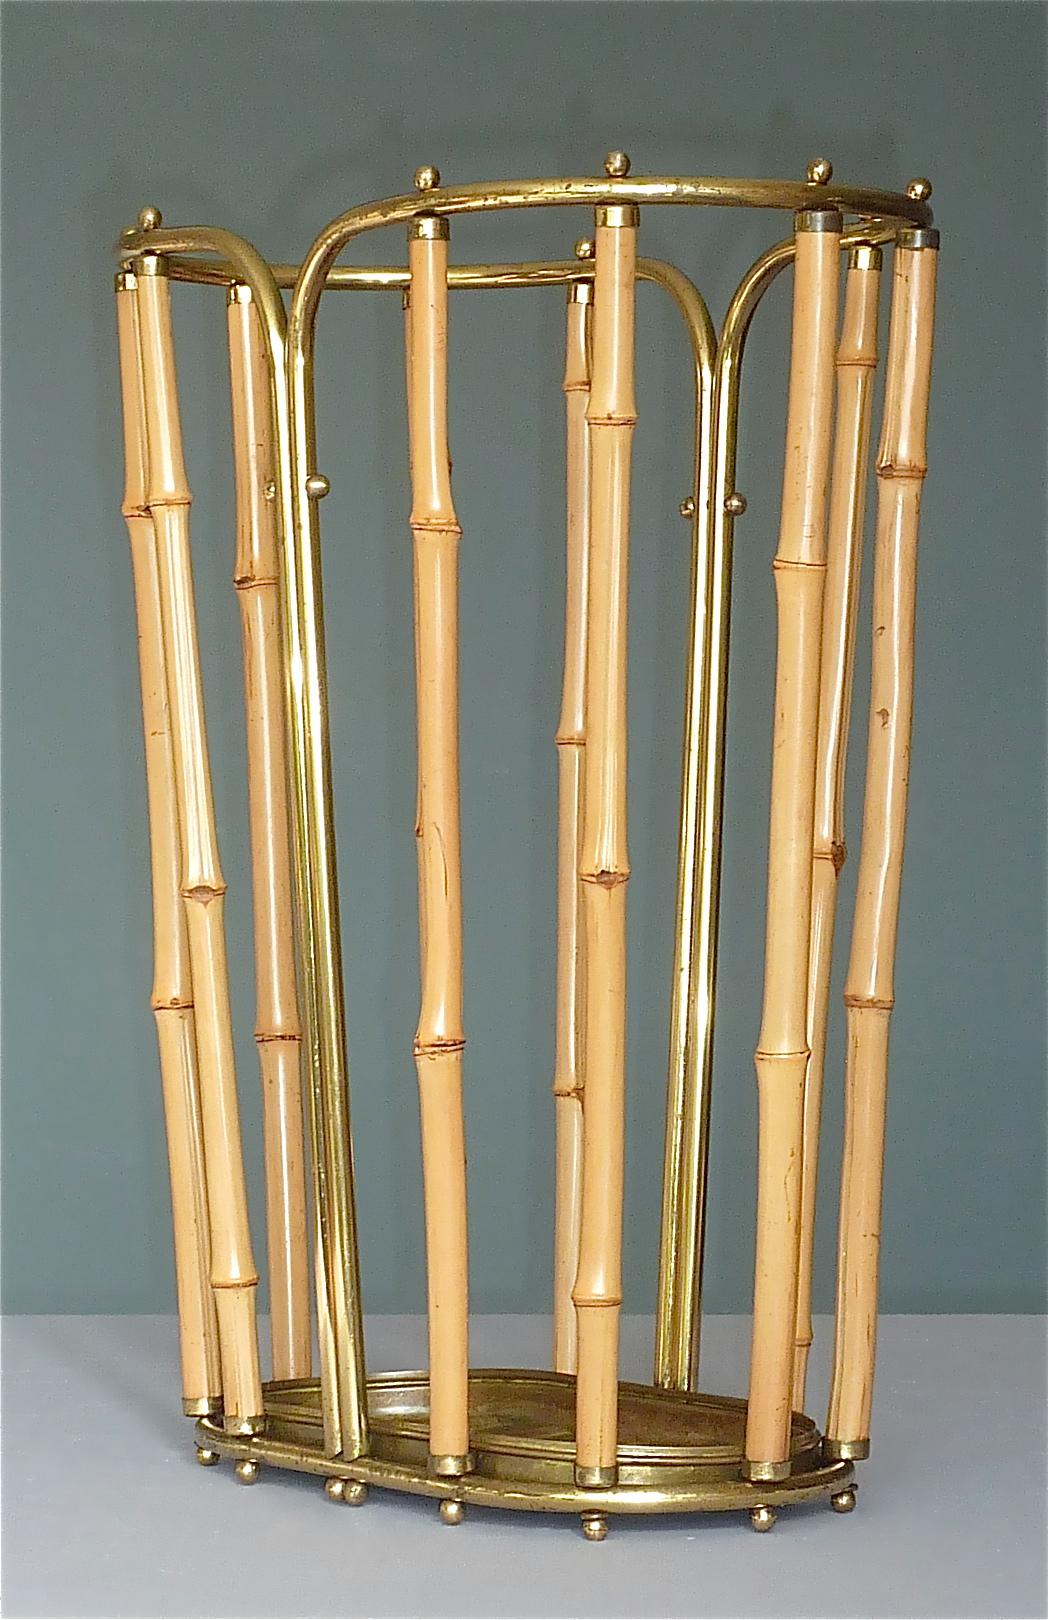 1950s Austrian Modernist Umbrella Stand Brass Bamboo, Josef Frank, Auböck Style In Good Condition For Sale In Nierstein am Rhein, DE